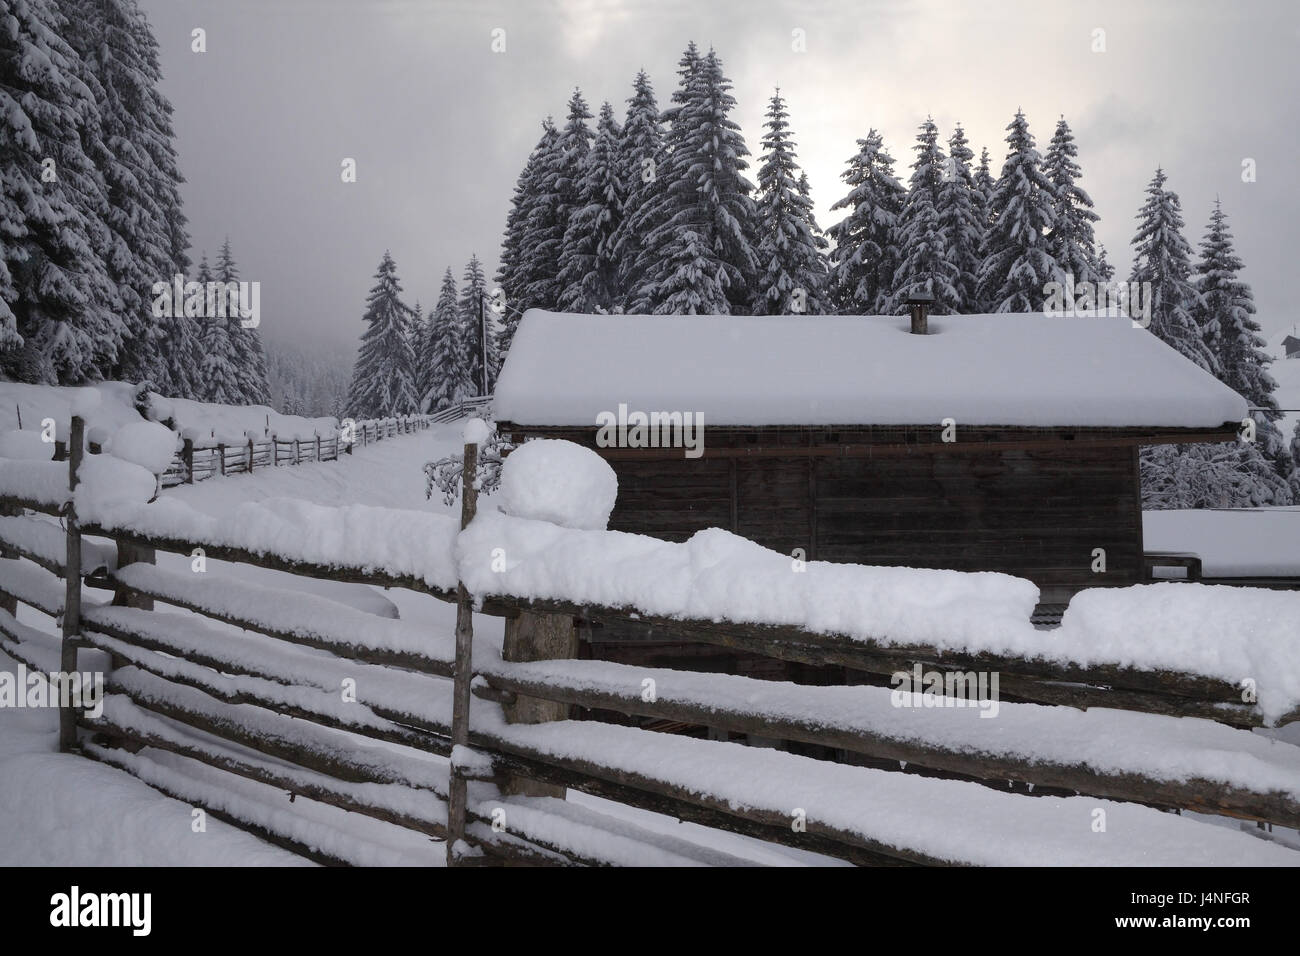 Capanna in legno, recinzione di legno, coperti di neve, modo, legno, paesaggio invernale, Austria, Tirolo, Zillertal, Tux, Brook Laners, Foto Stock